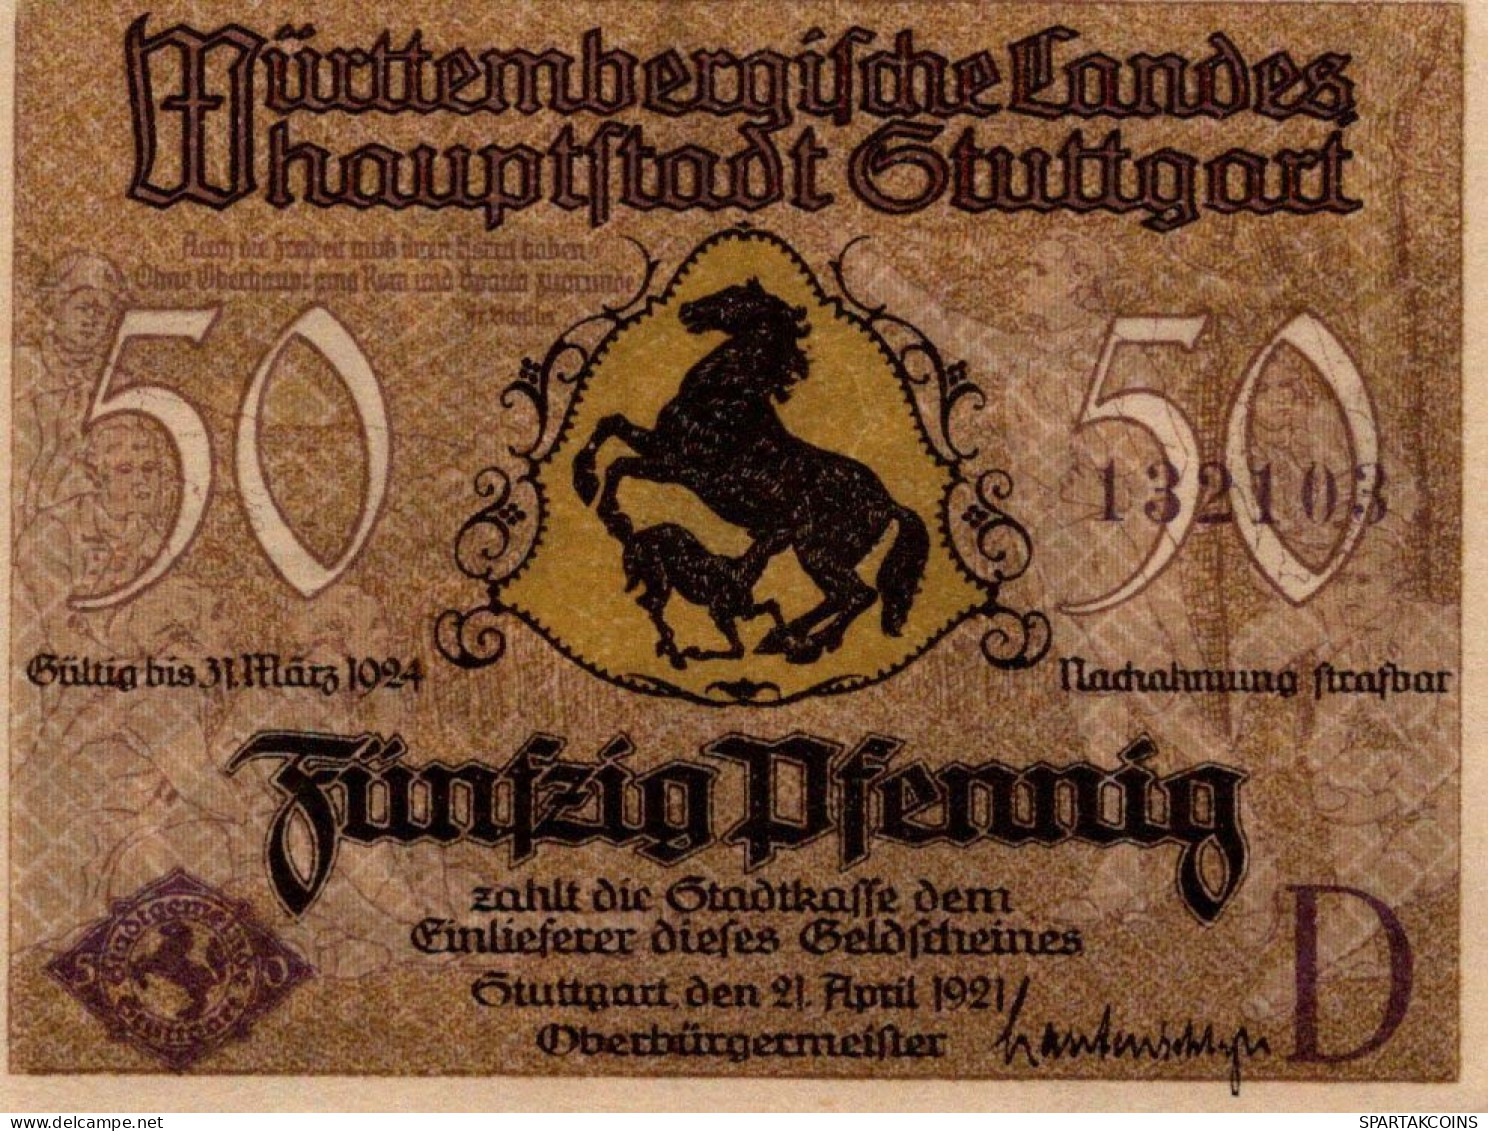 50 PFENNIG 1921 Stadt STUTTGART Württemberg UNC DEUTSCHLAND Notgeld #PC429 - [11] Lokale Uitgaven